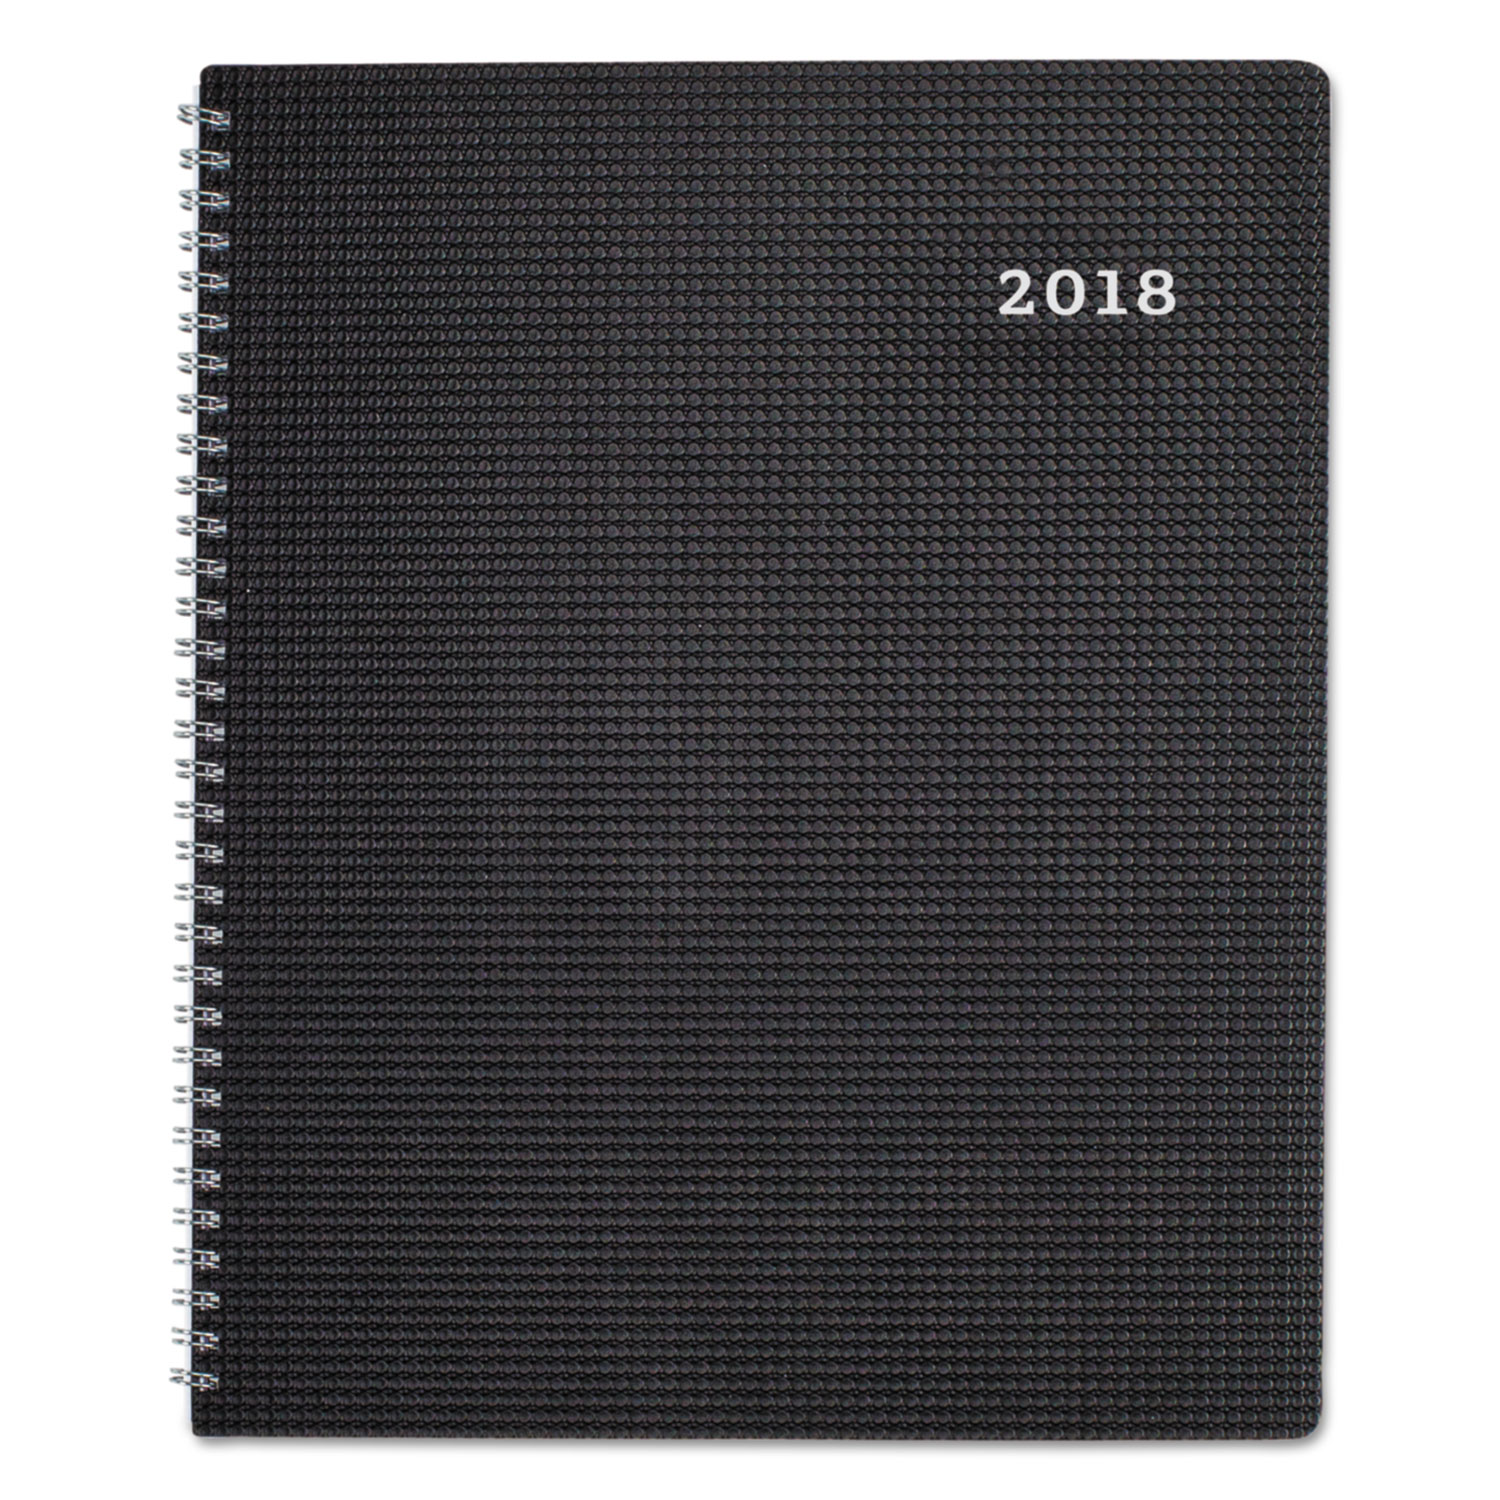 DuraFlex 14-Month Planner, 8 7/8 x 7 1/8, Black, 2017-2018